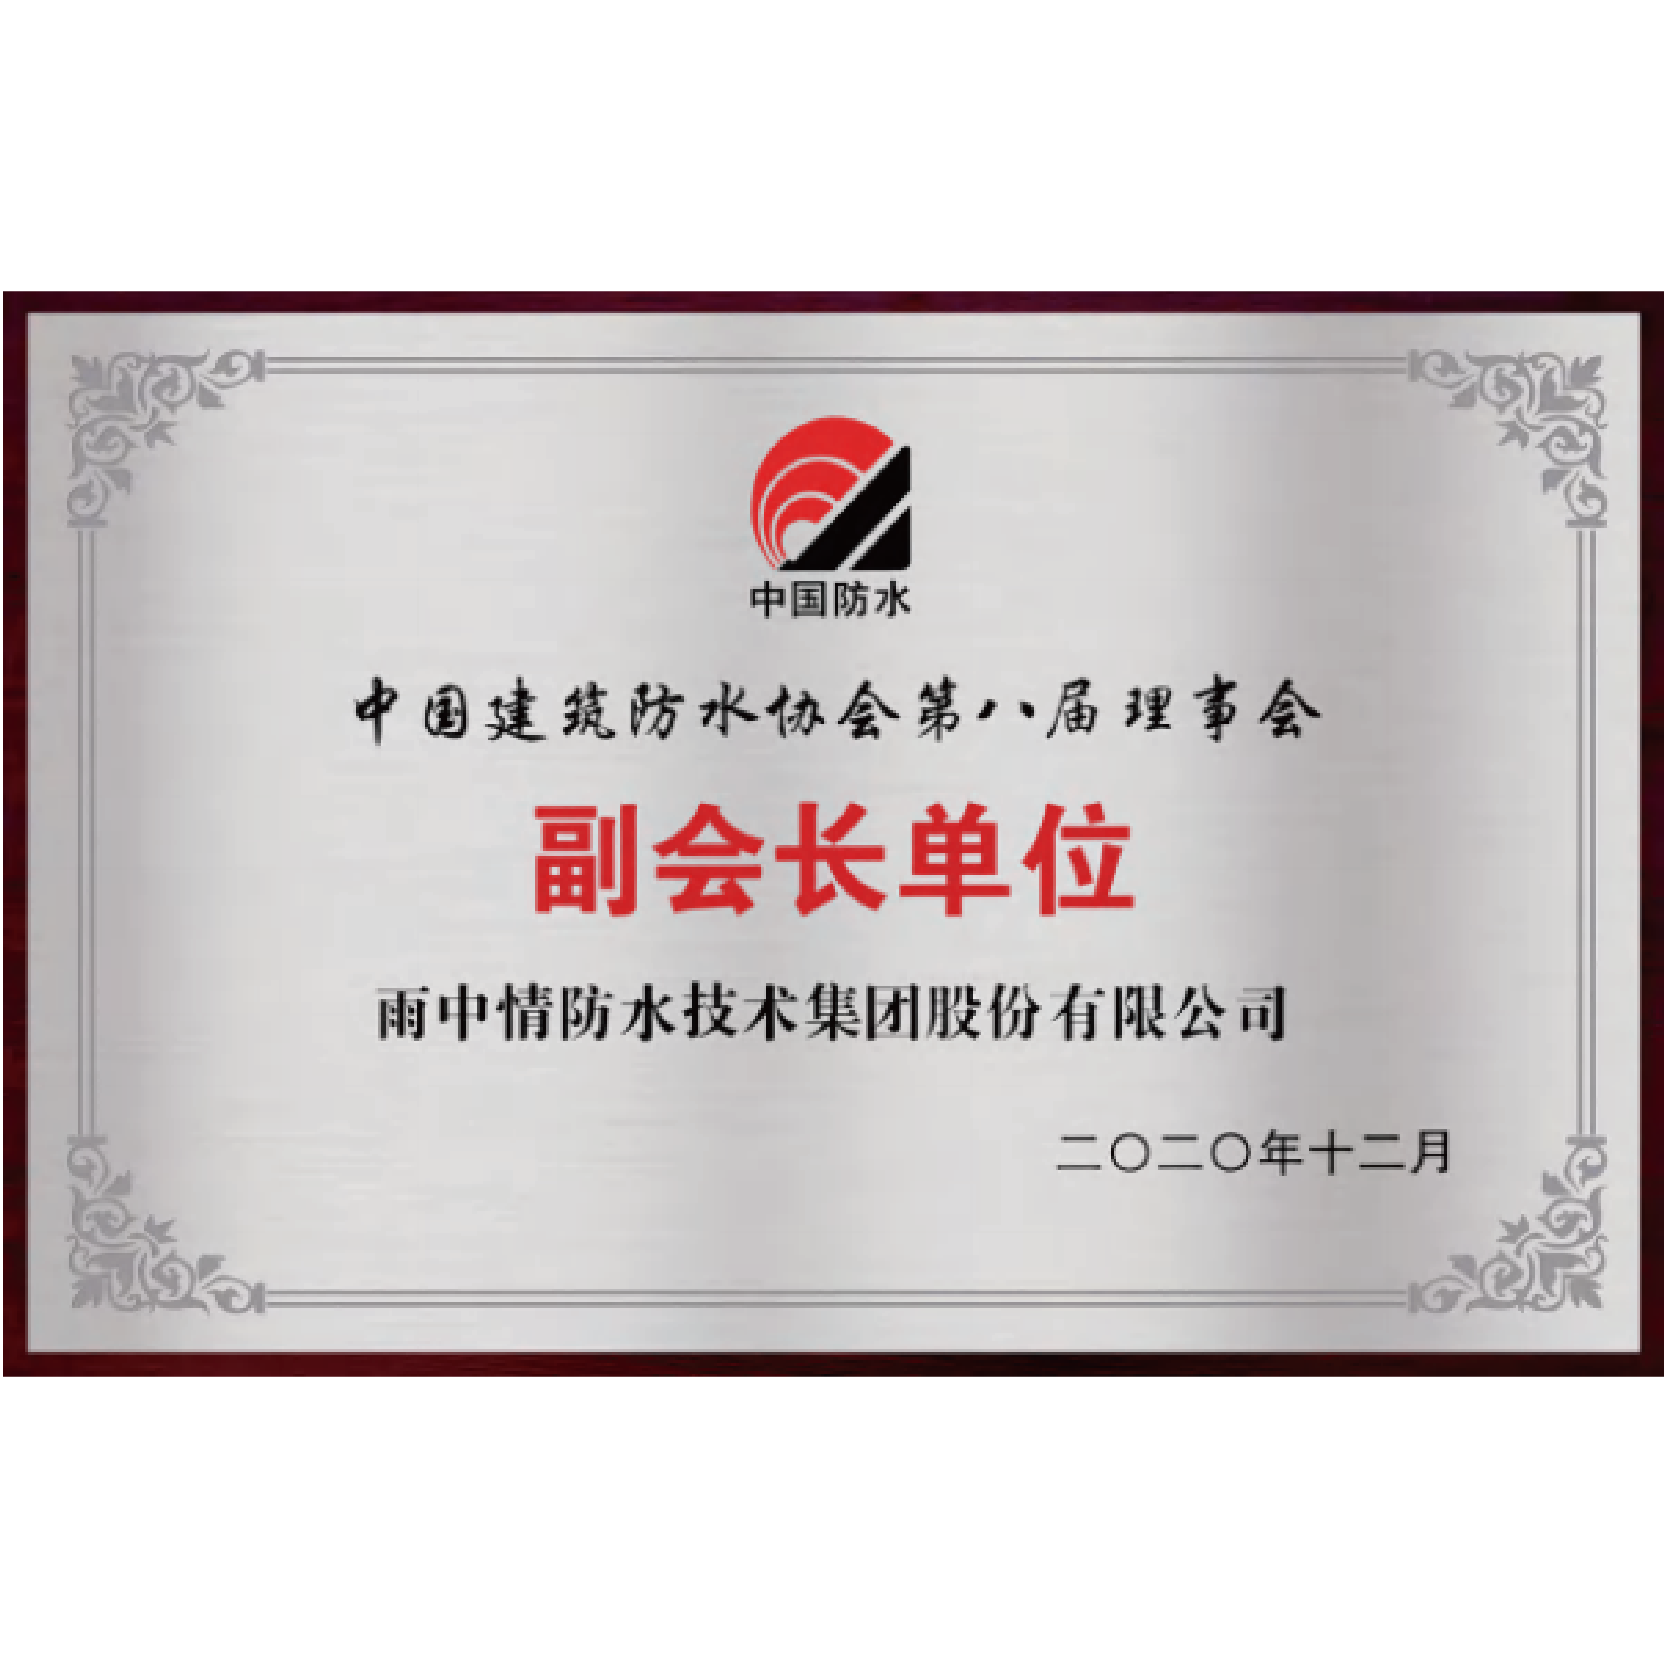 中國建筑防水協會副會長單位